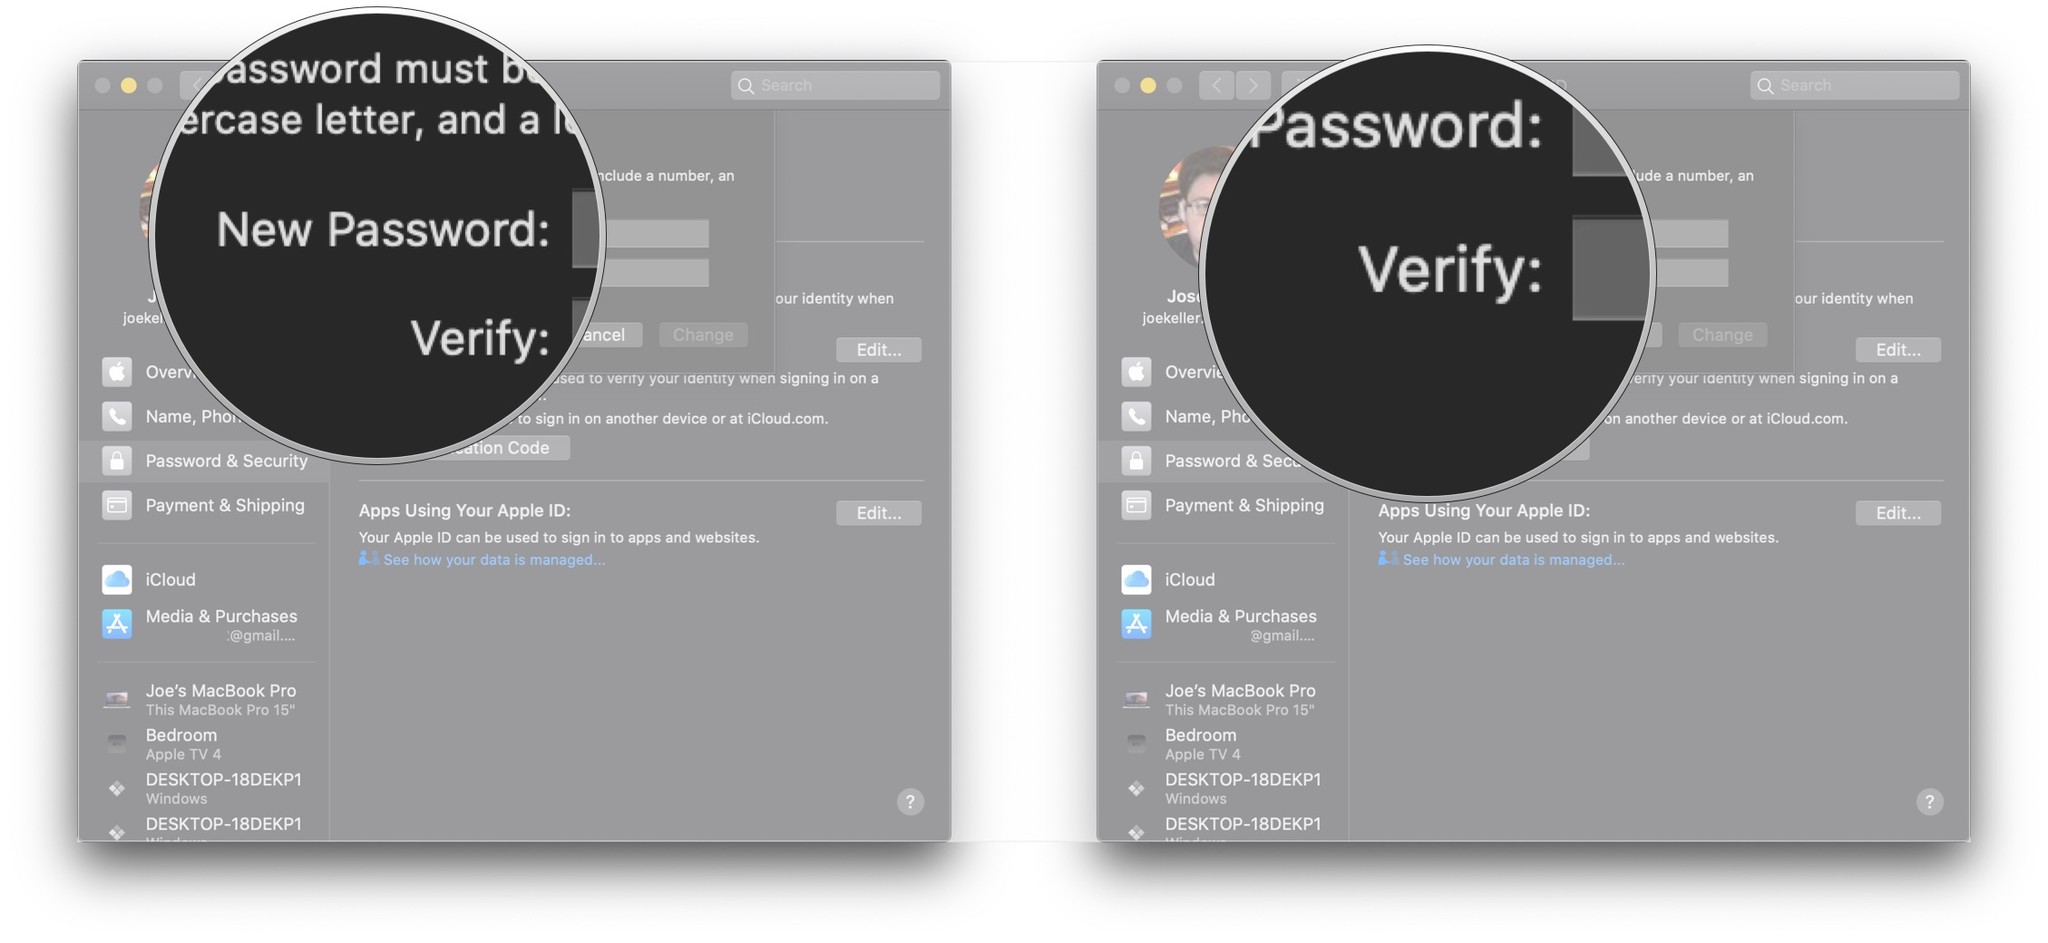 Enter new password, verify new password